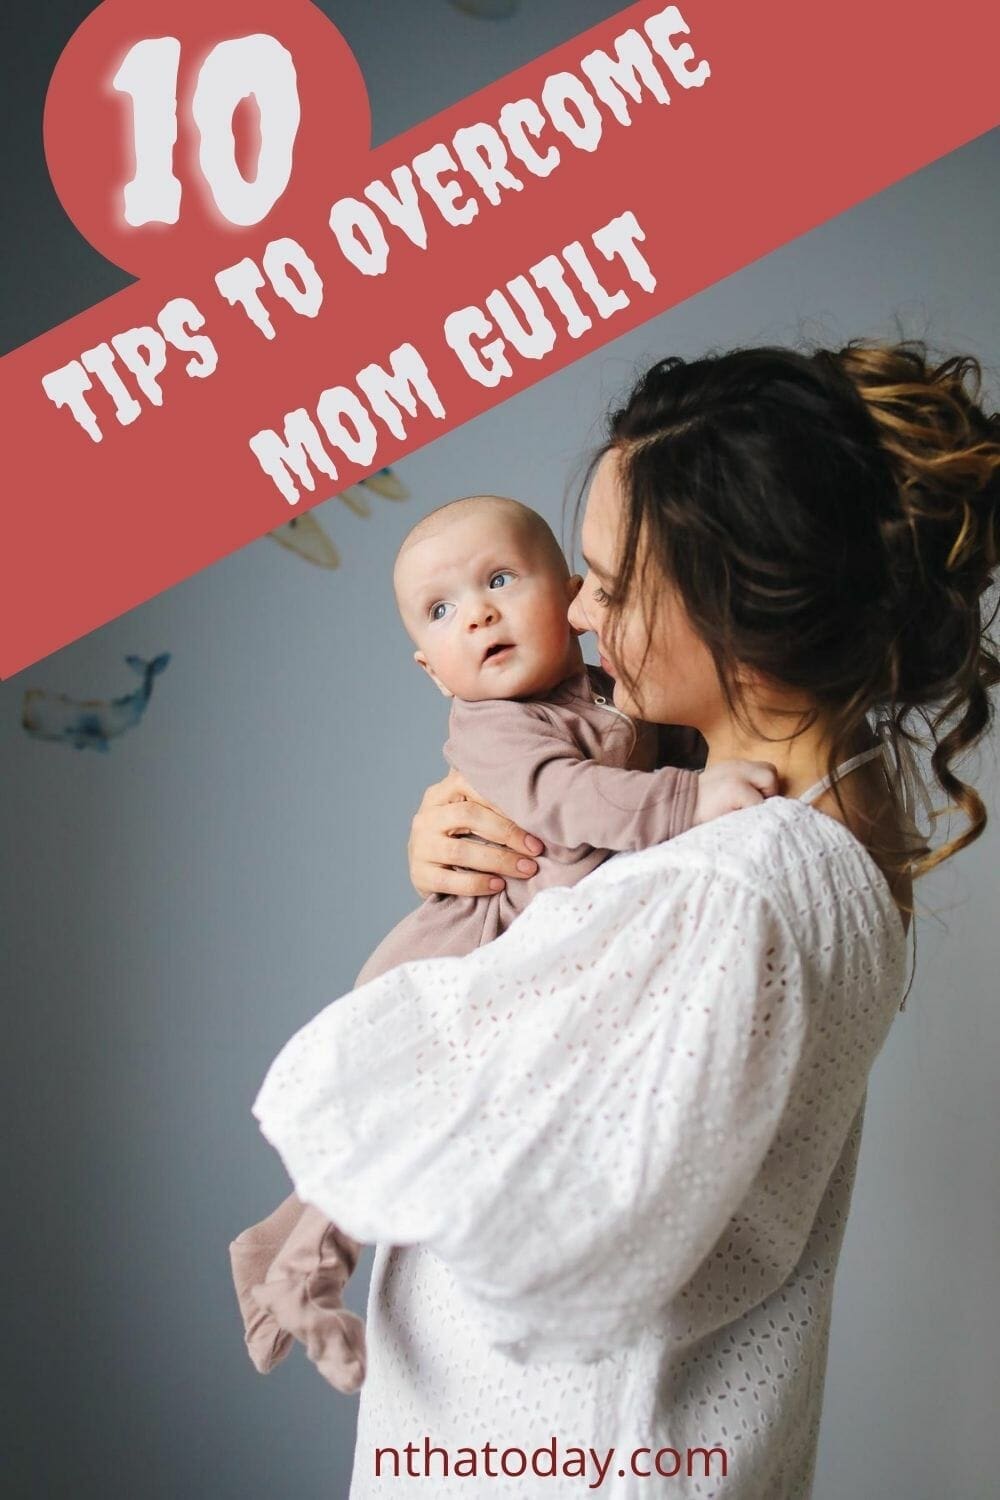 Overcome mom guilt